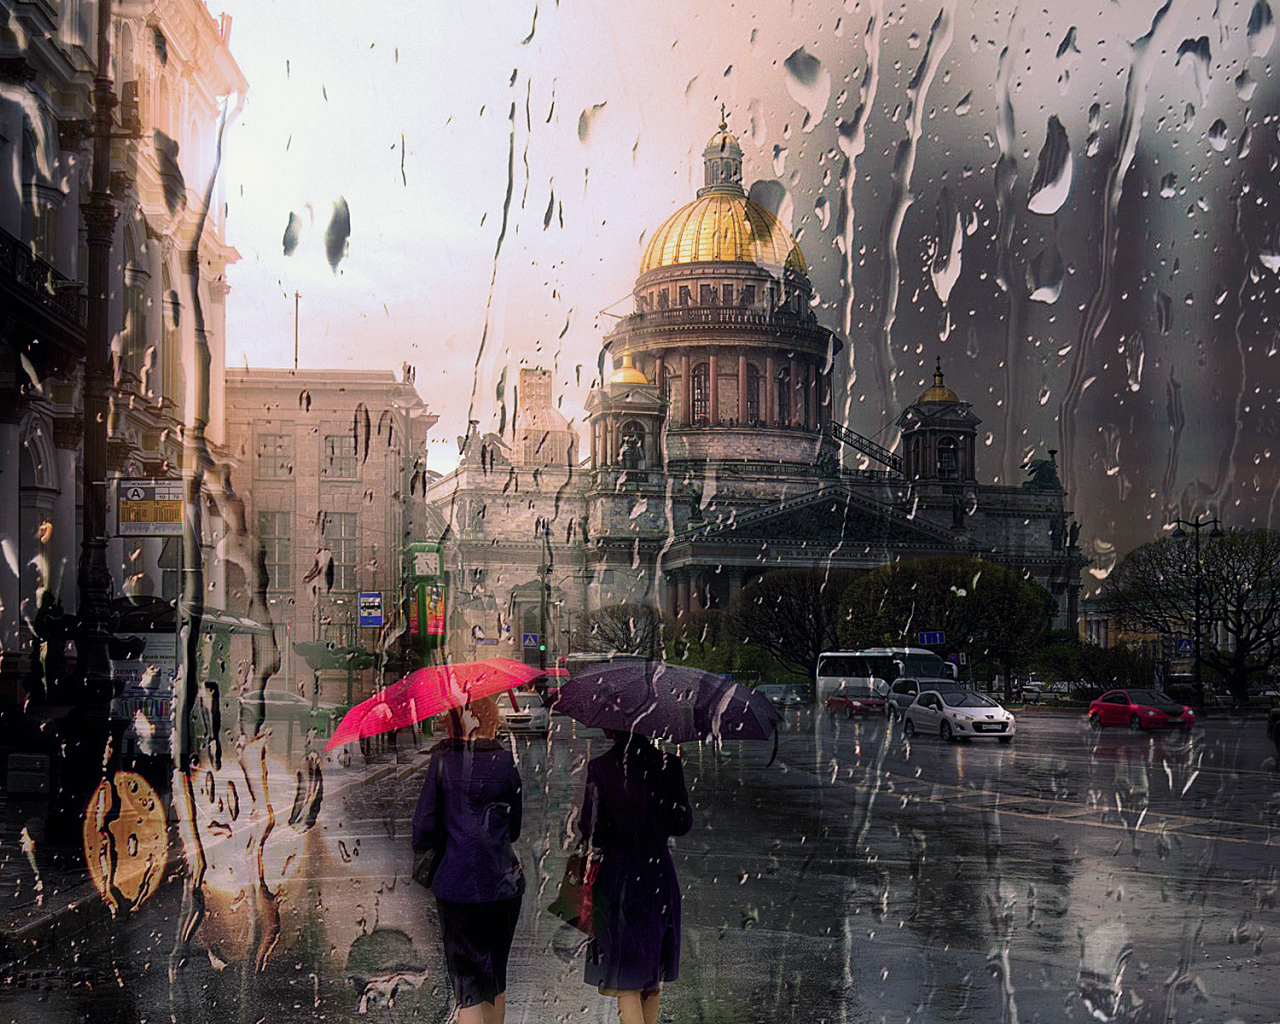 Санкт Петербург, дождь, люди, капли, Исаакиевский собор.